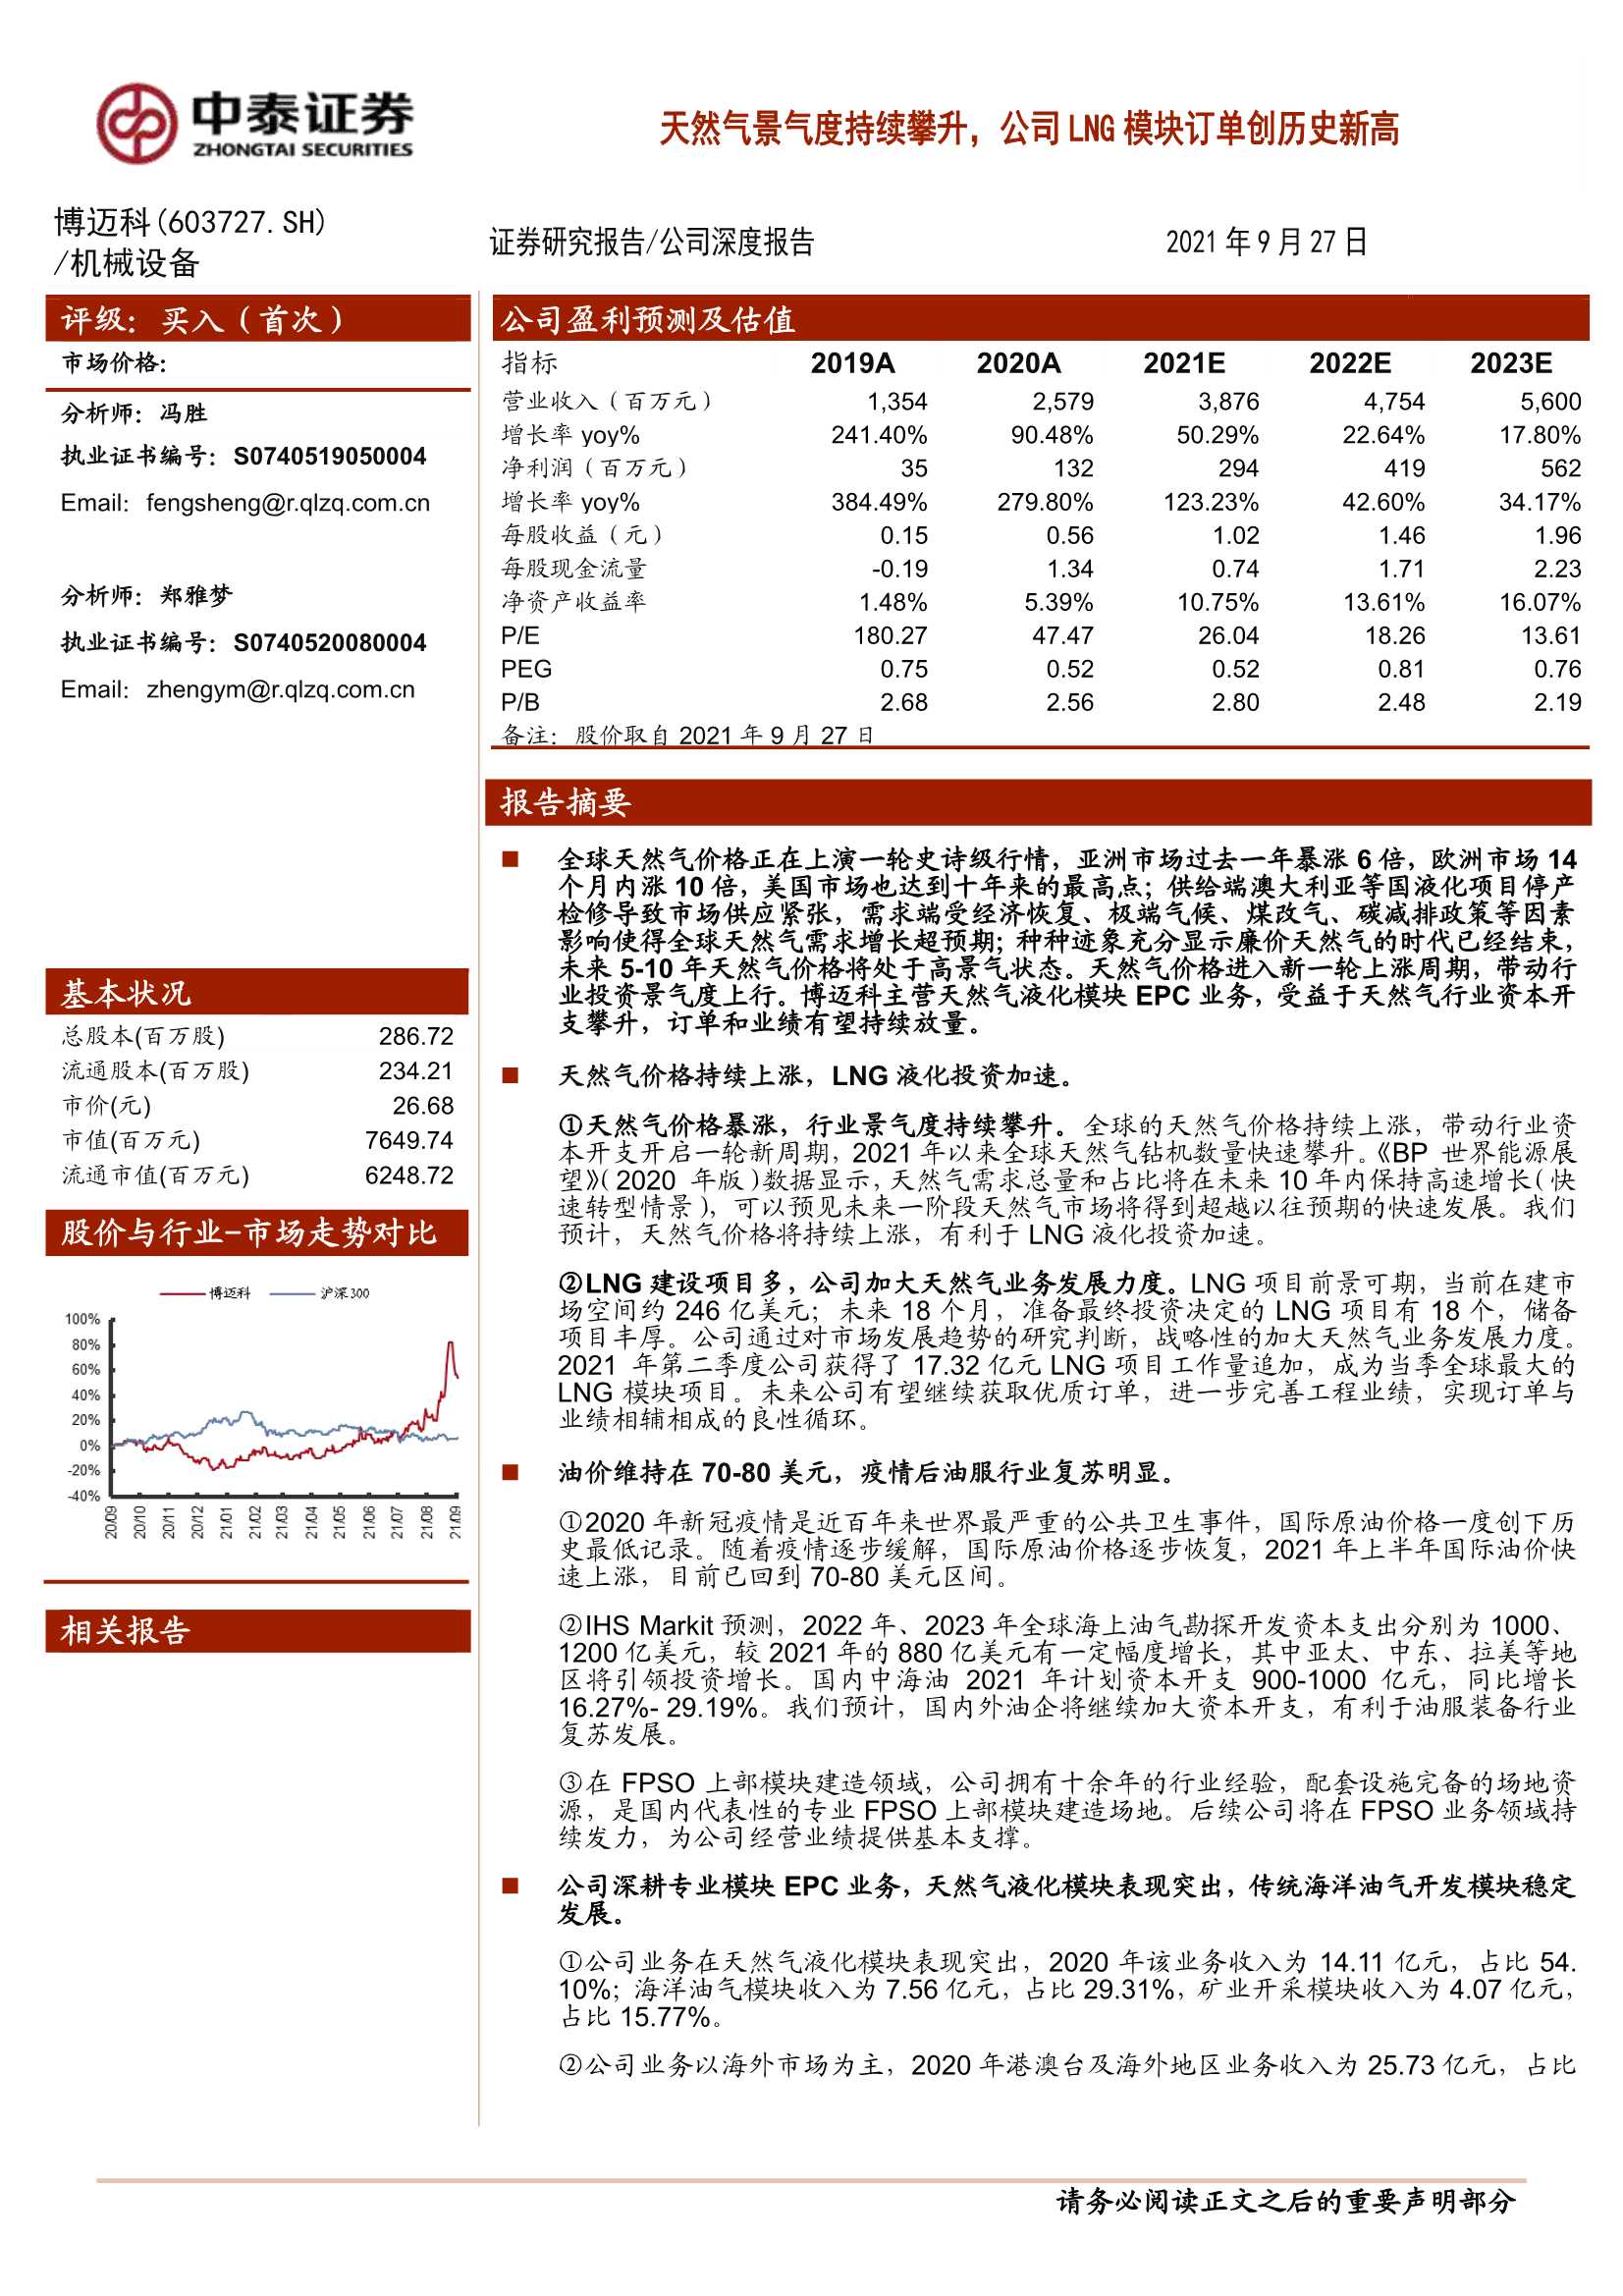 中泰证券-博迈科-603727-天然气景气度持续攀升，公司LNG模块订单创历史新高 -20210927-26页